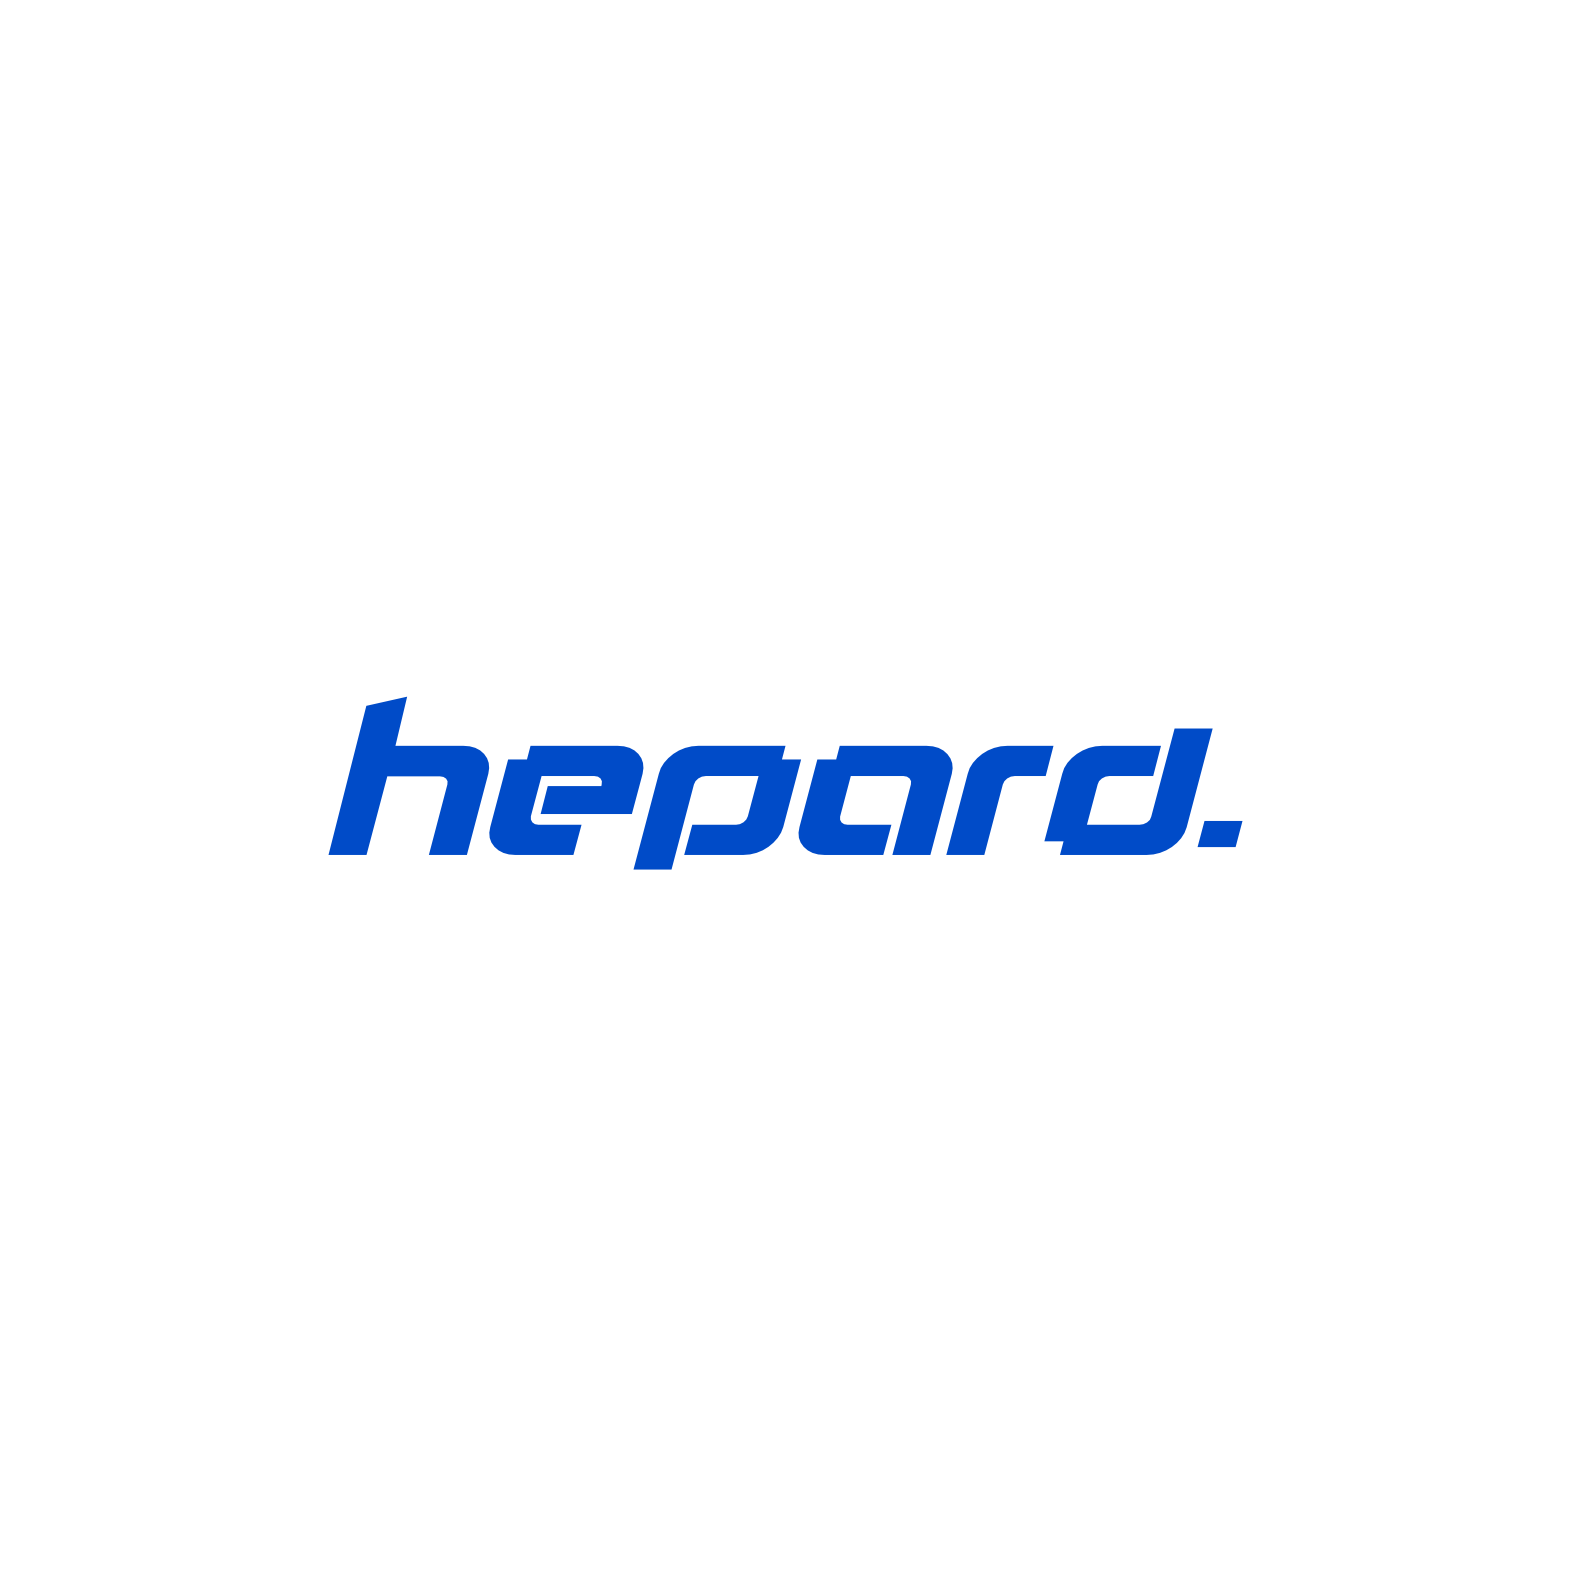 HEPARD